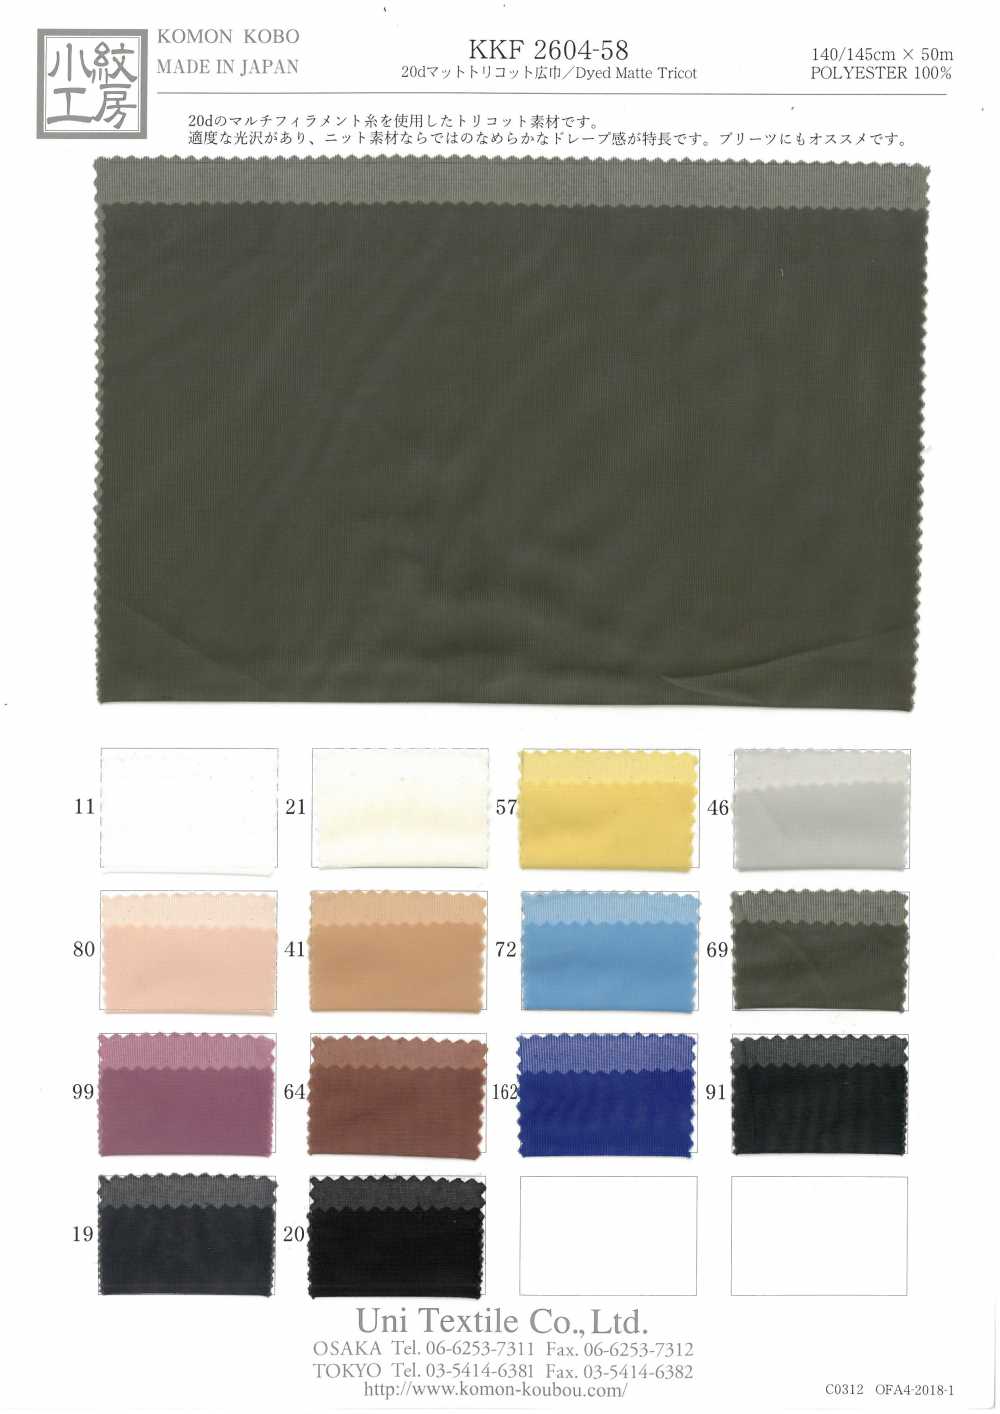 KKF2604-58 20d Fosco Tricot Largura Larga[Têxtil / Tecido] Uni Textile